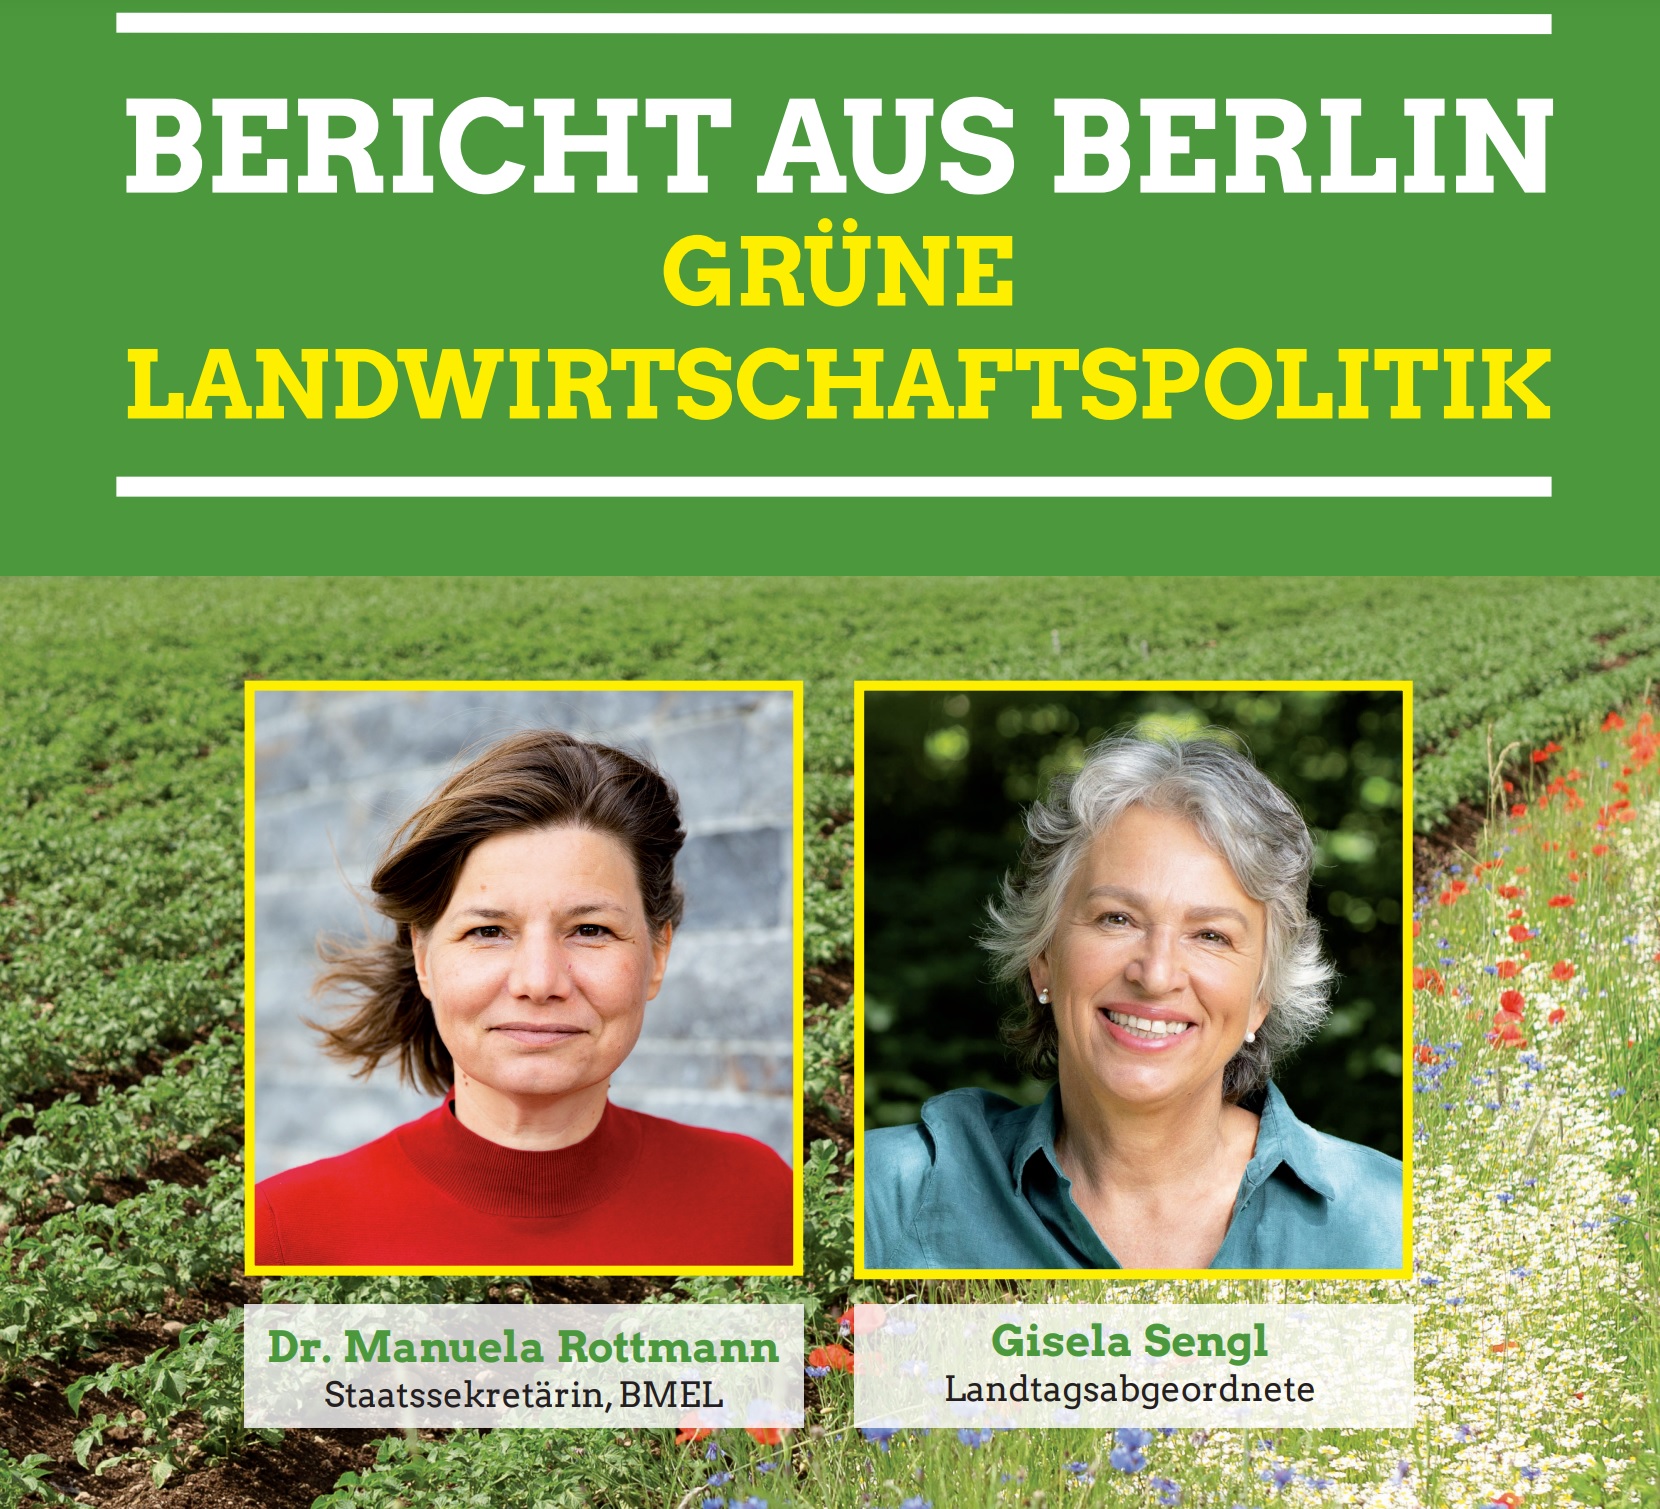 Vor landwirtschaftlichen Flächen sind die Portträts von Manuela Rottmann und Gisela Sengl abgebildet. Darüber der Titel der Veranstaltun